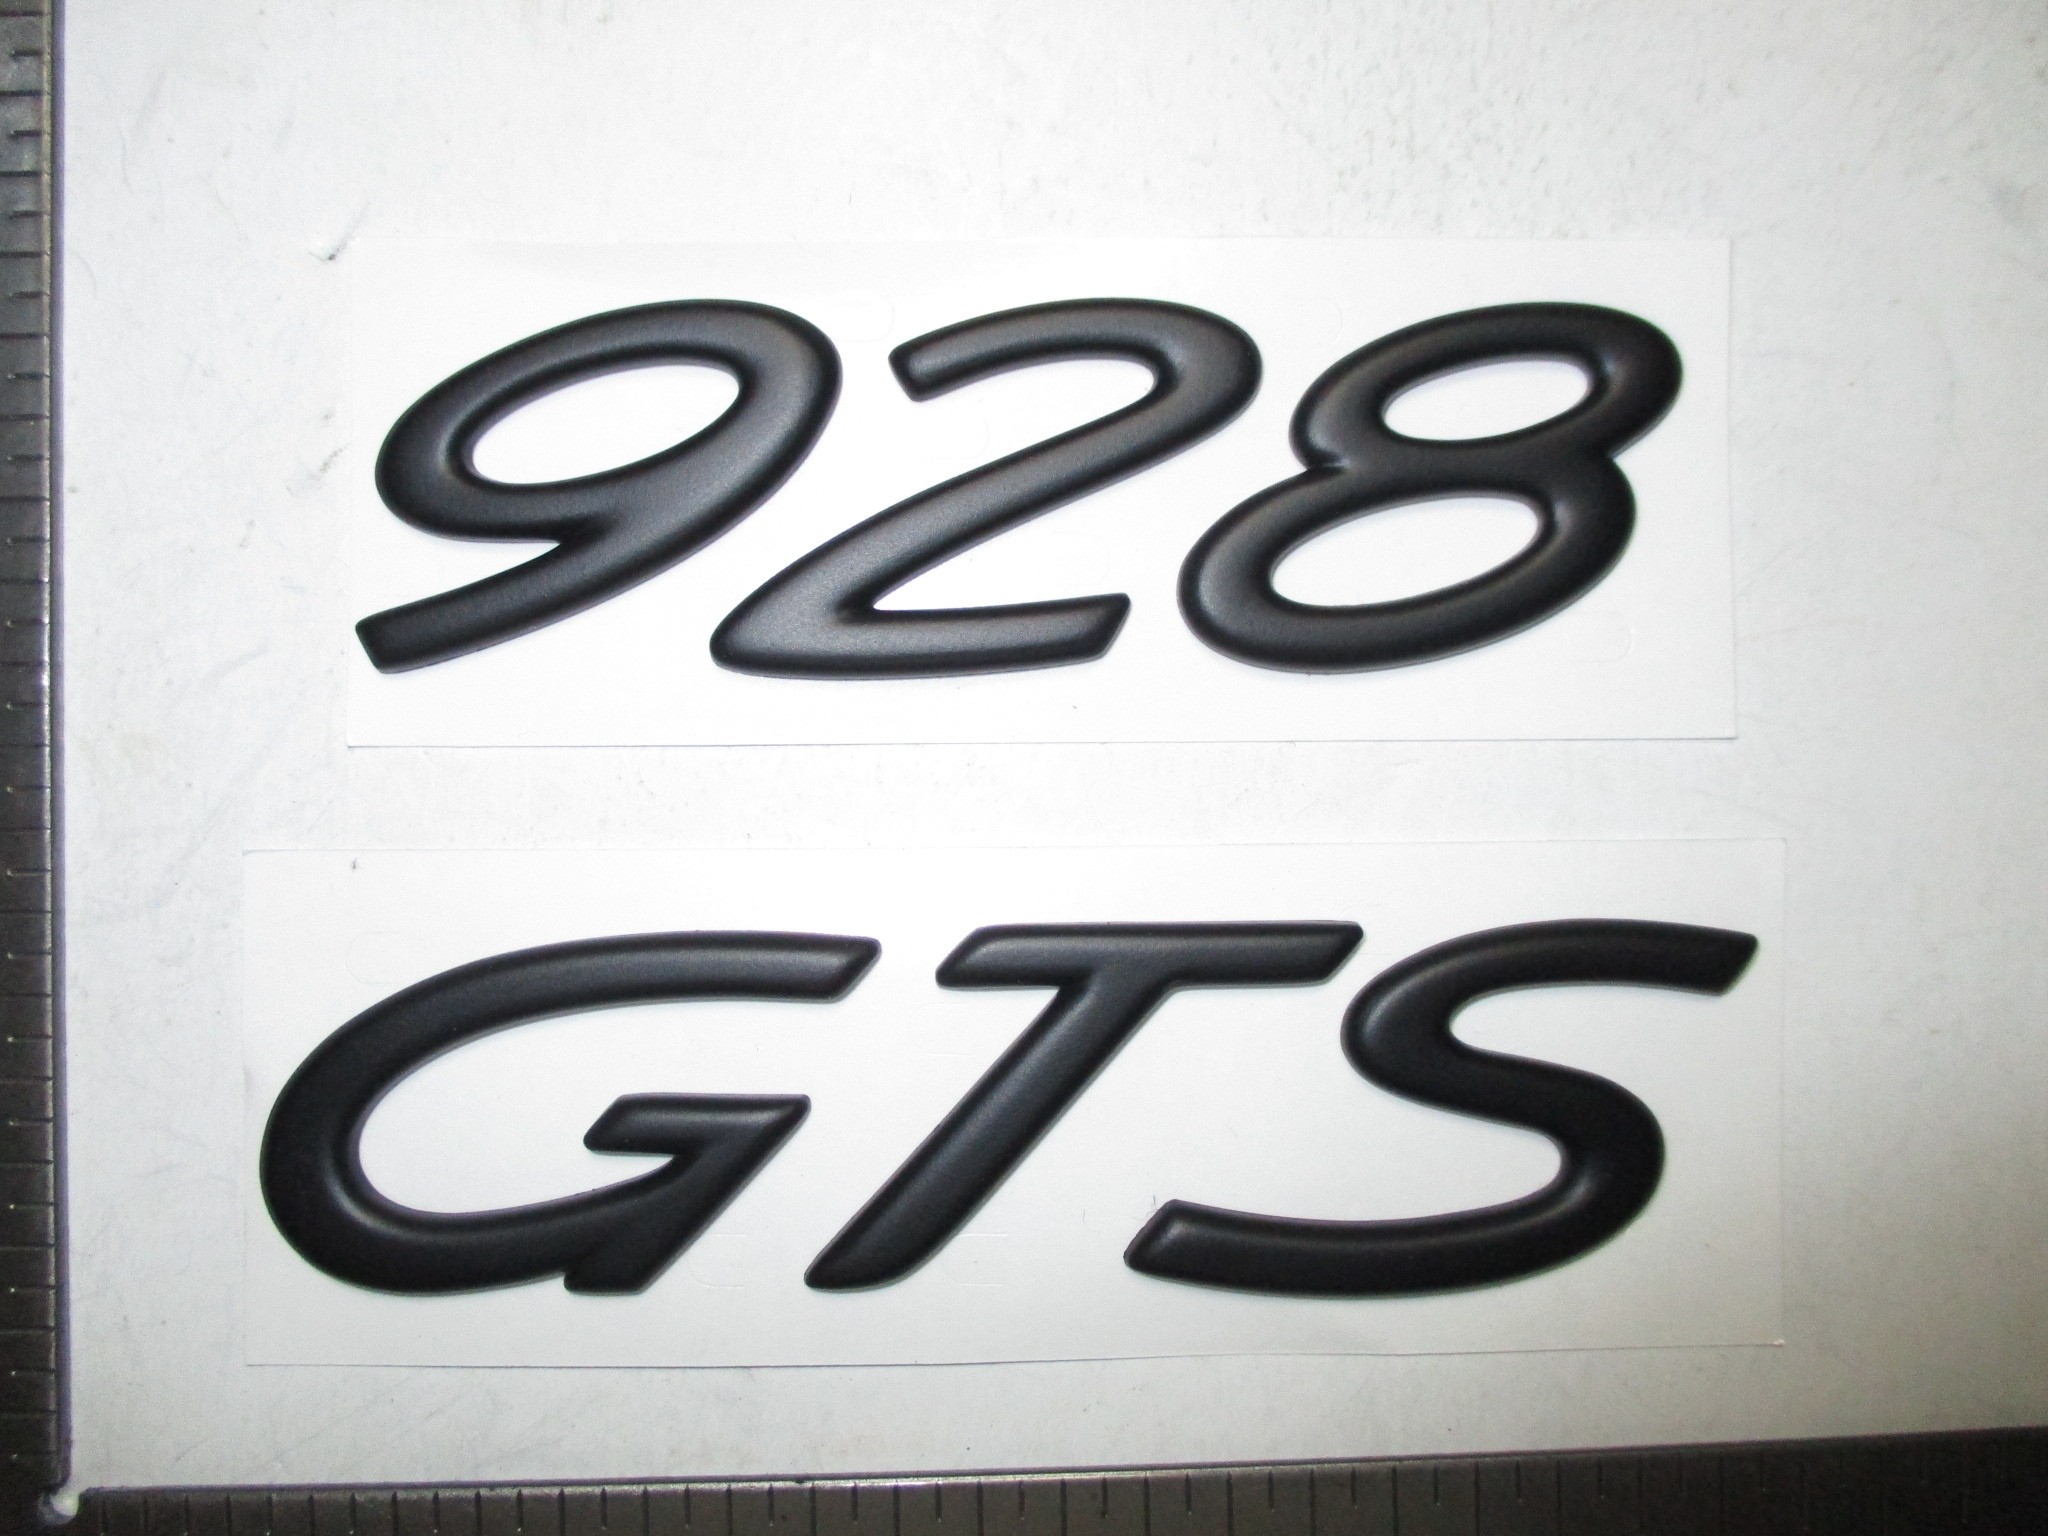 928 GTS emblem